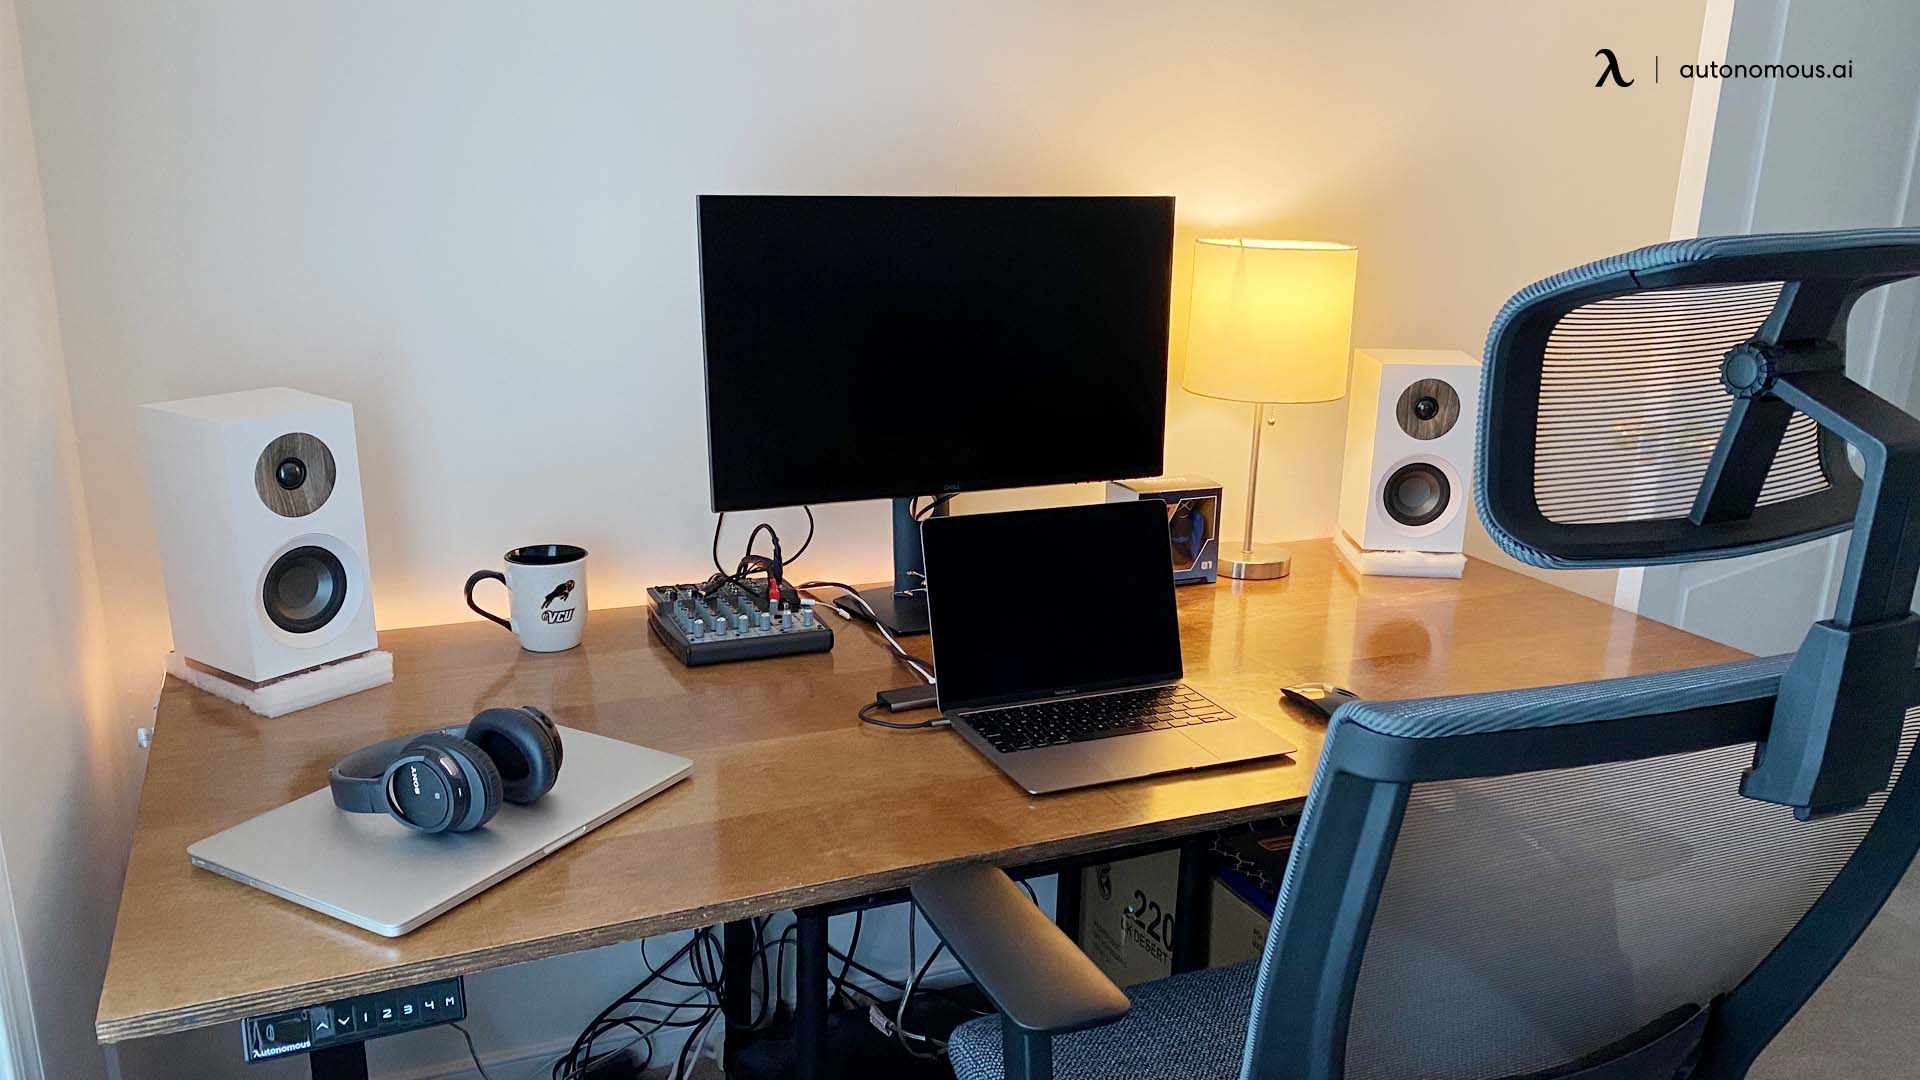 10 Steps to Make Your Own DIY Adjustable Standing Desk